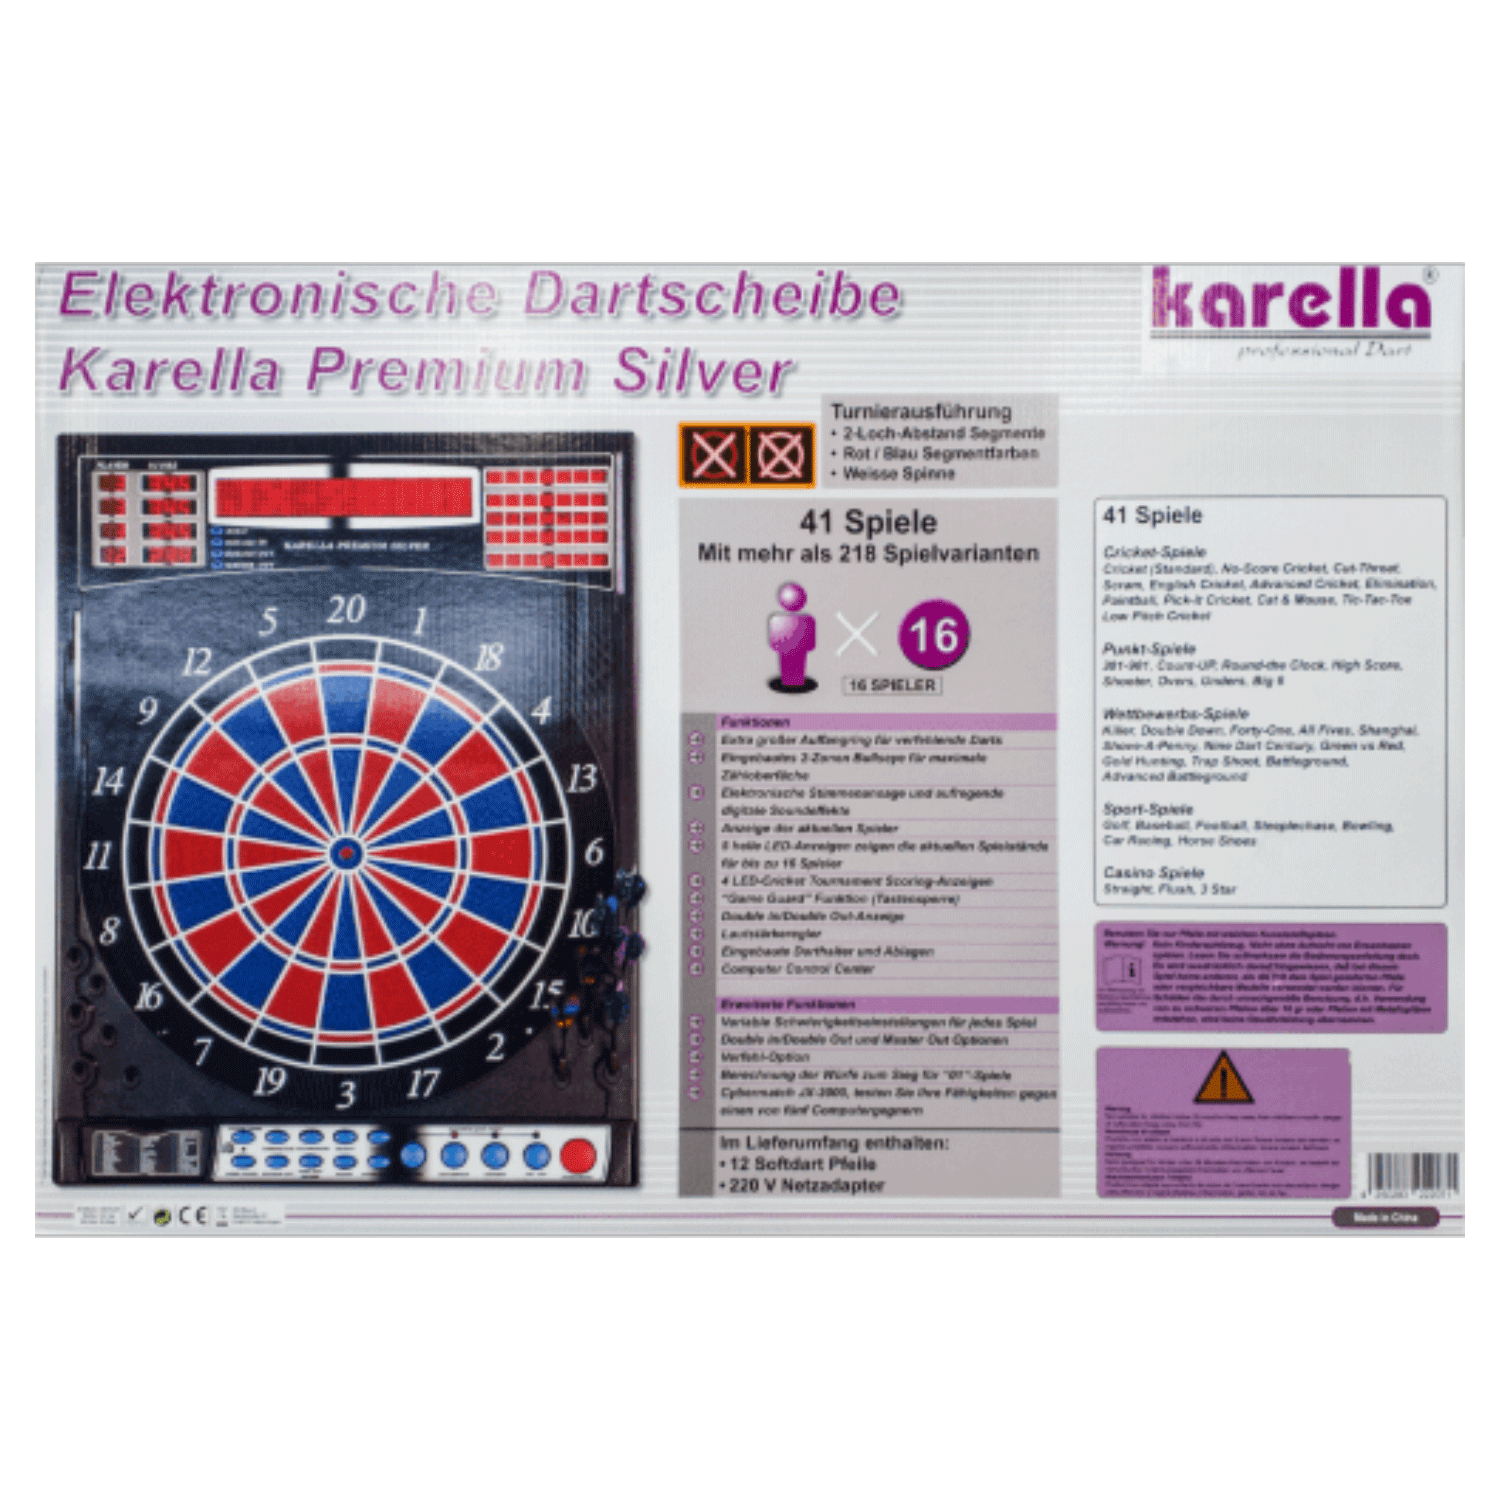 Karella Premium Silver E-Dartboard